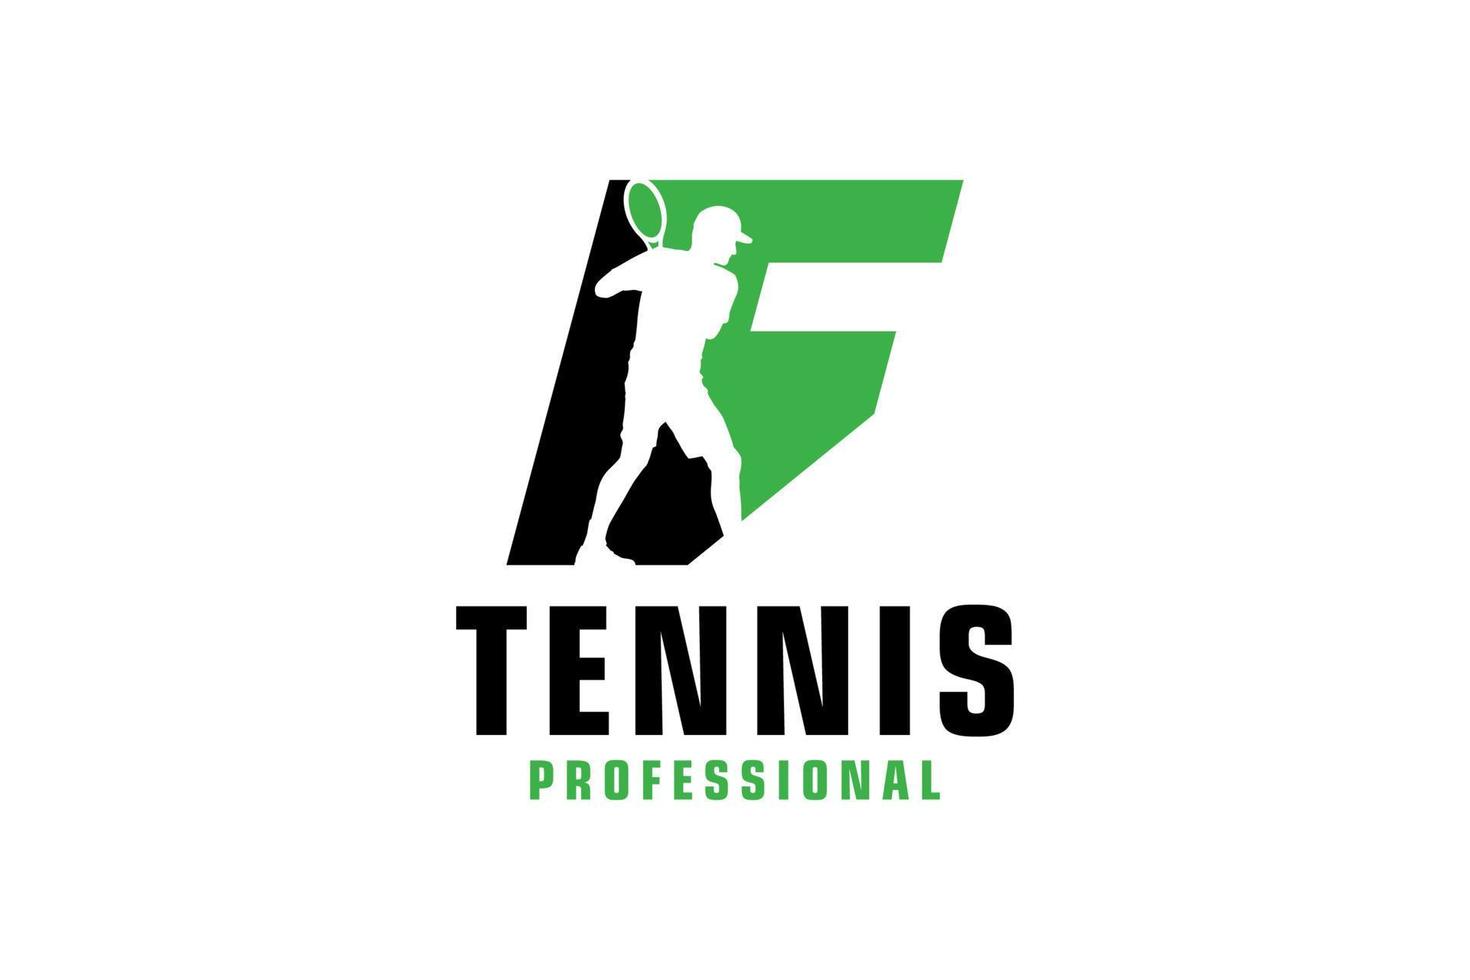 lettera f con disegno del logo della siluetta del tennista. elementi del modello di progettazione vettoriale per la squadra sportiva o l'identità aziendale.